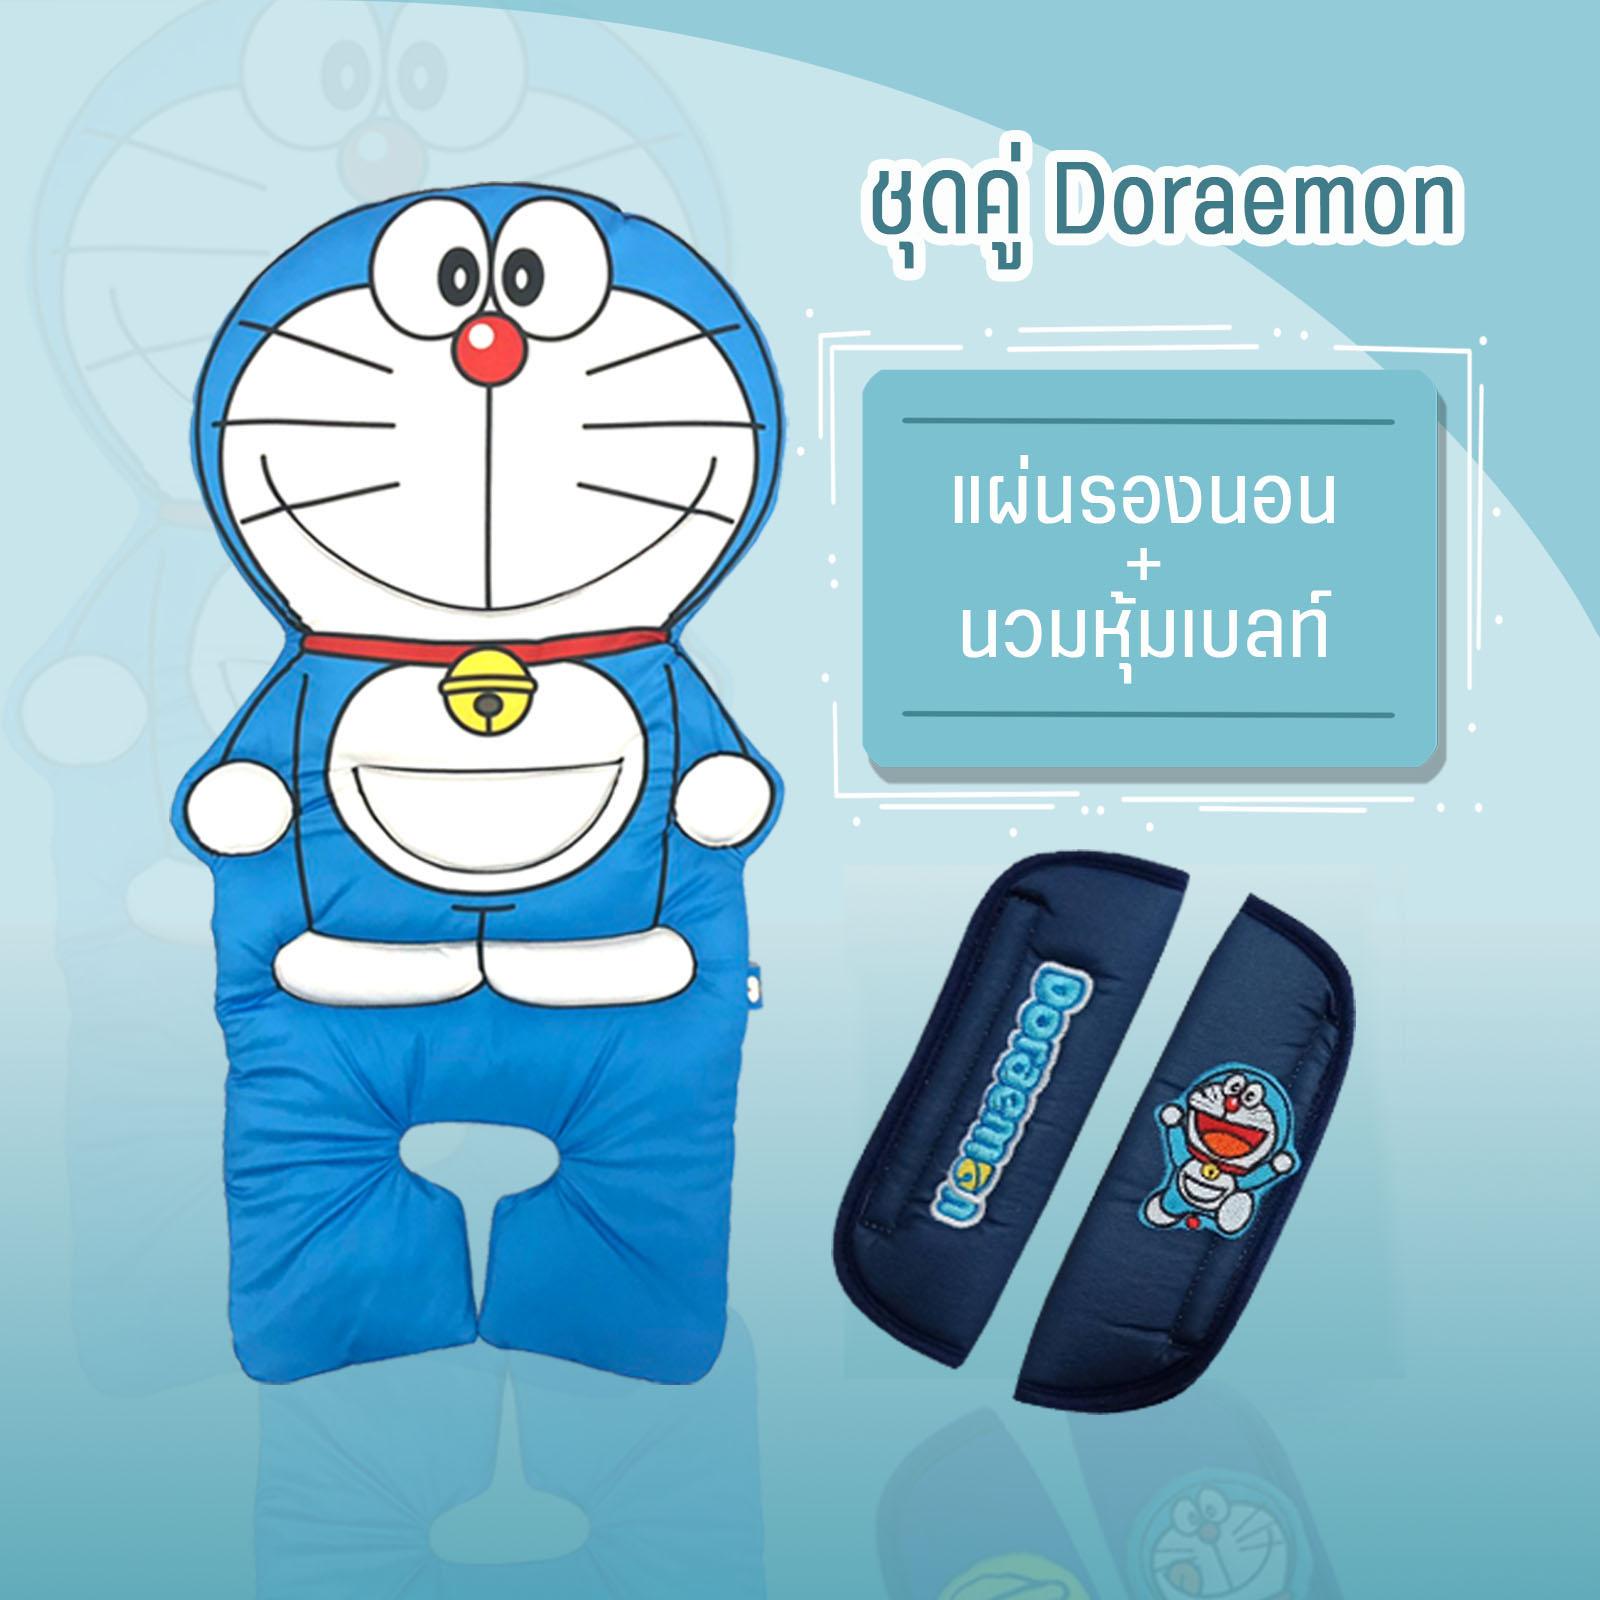 โปรโมชั่นจับคู่ถูกกว่า เช็ทผ้ารองนอน+นวมหุ้มเบลท์ Doraemon(โดราเอม่อน)